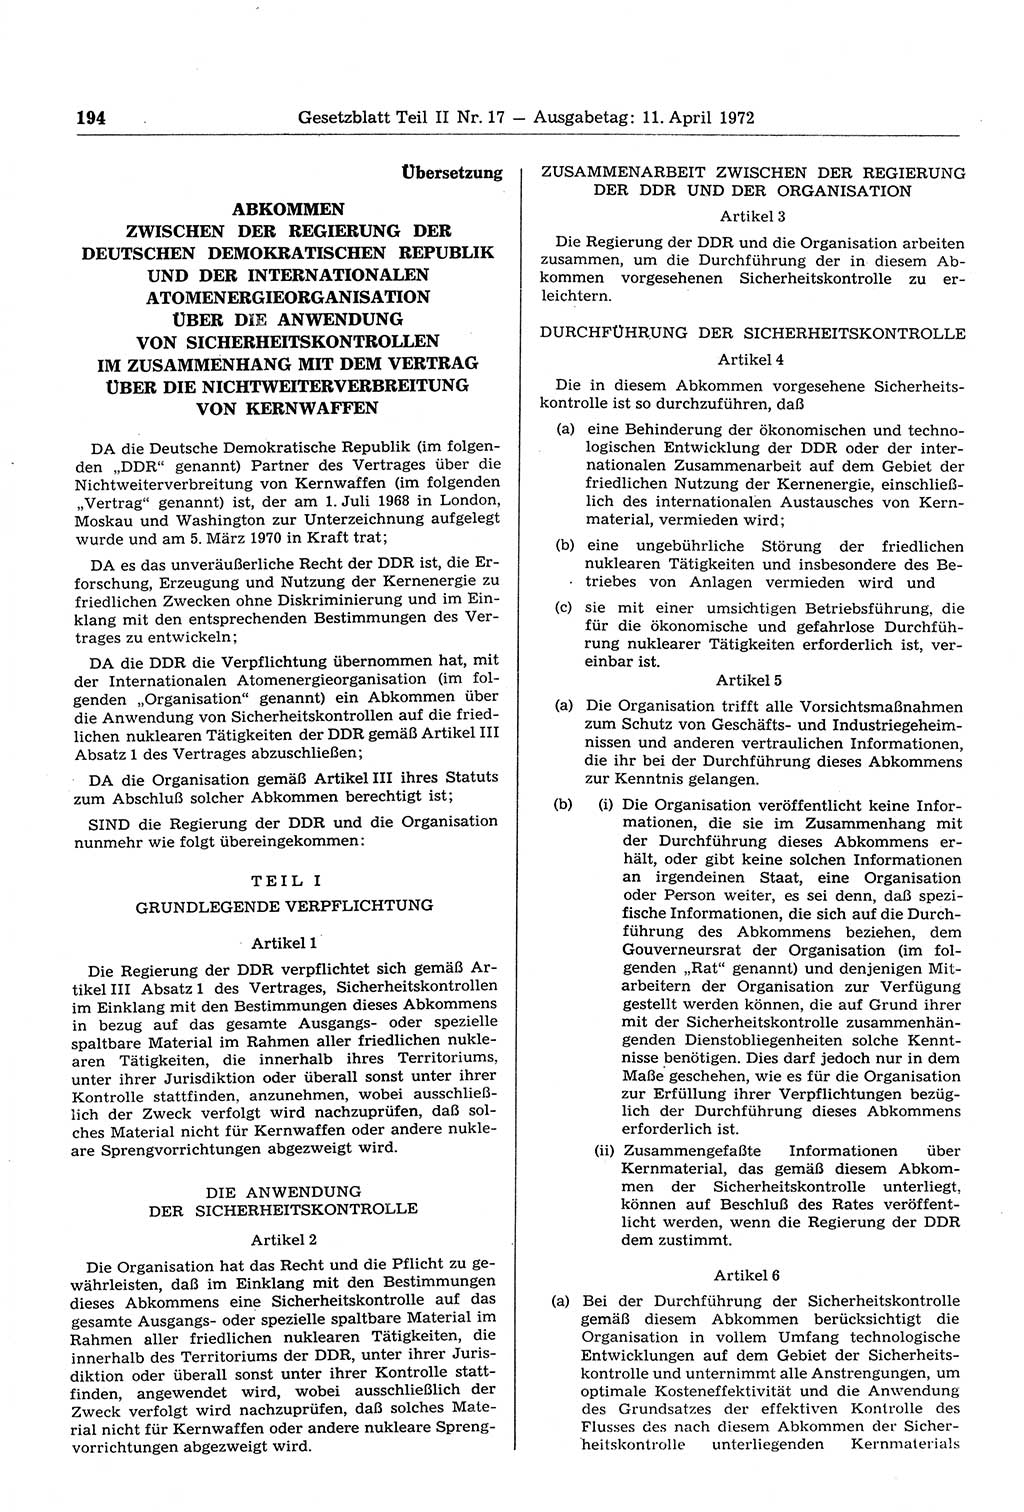 Gesetzblatt (GBl.) der Deutschen Demokratischen Republik (DDR) Teil ⅠⅠ 1972, Seite 194 (GBl. DDR ⅠⅠ 1972, S. 194)